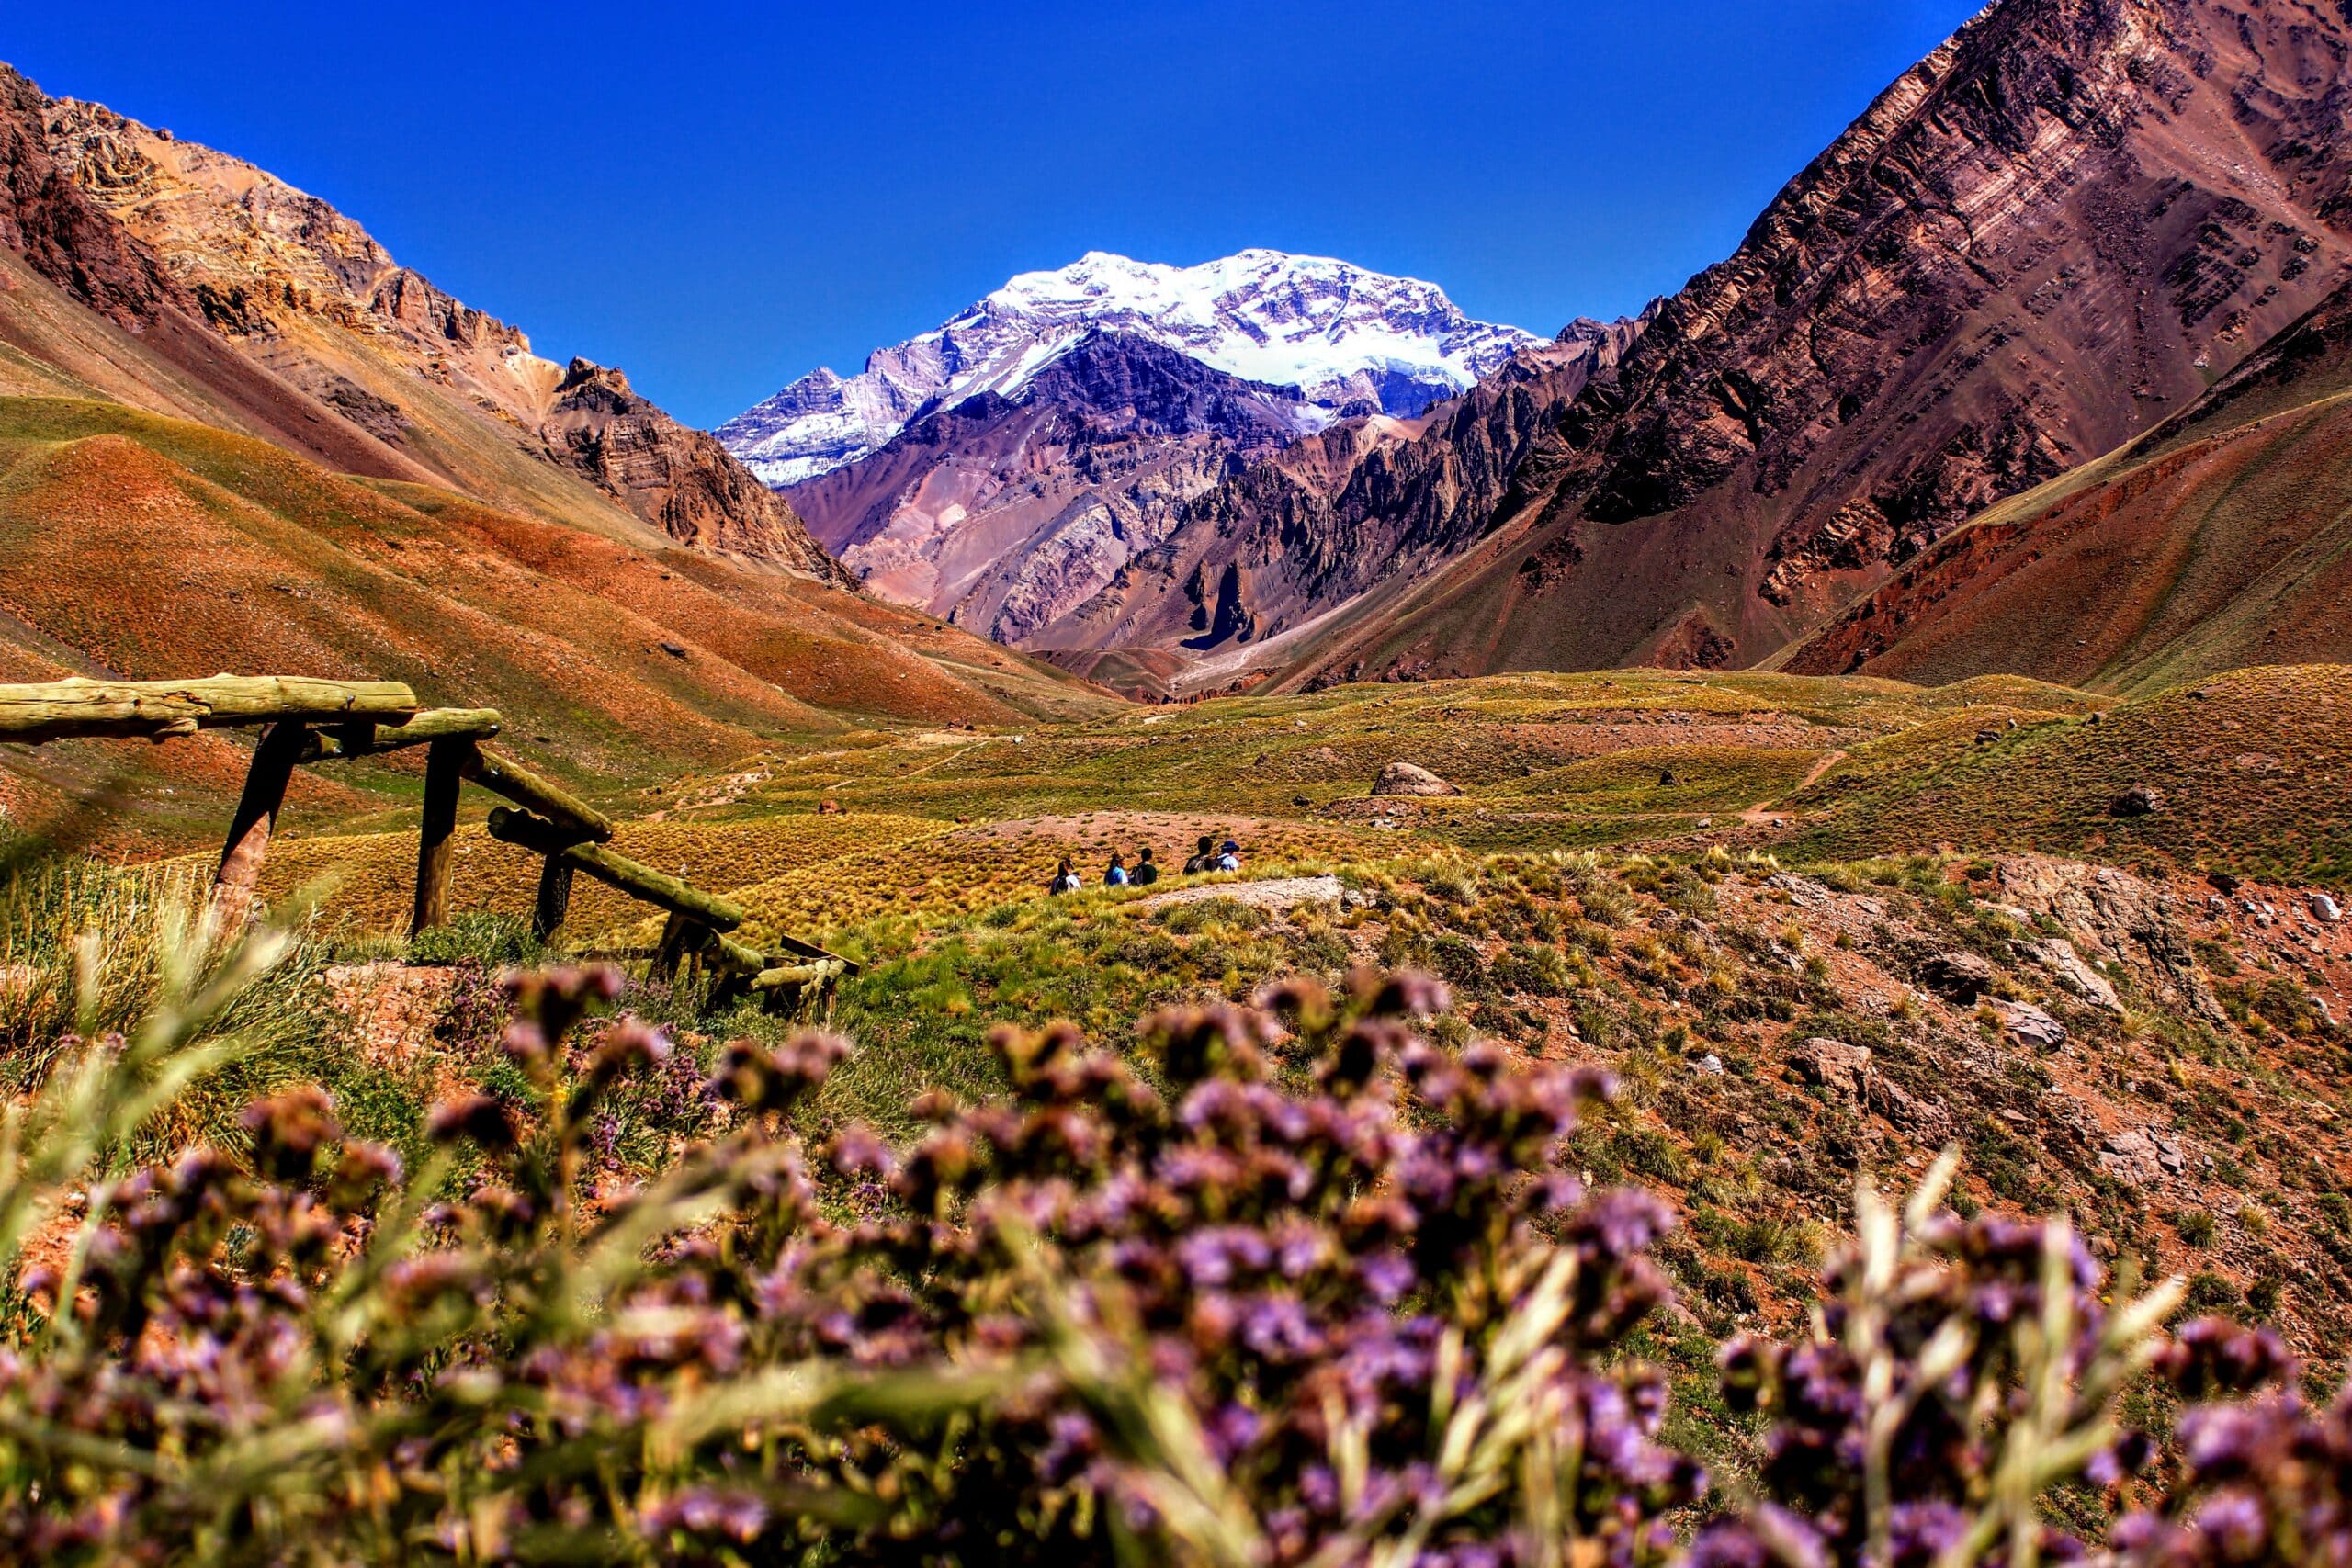 Vista das montanhas do Parque Provincial Aconcágua, Mendoza com áreas verde e no fundo neve cobrindo o topo. Representa chip celular Mendoza.